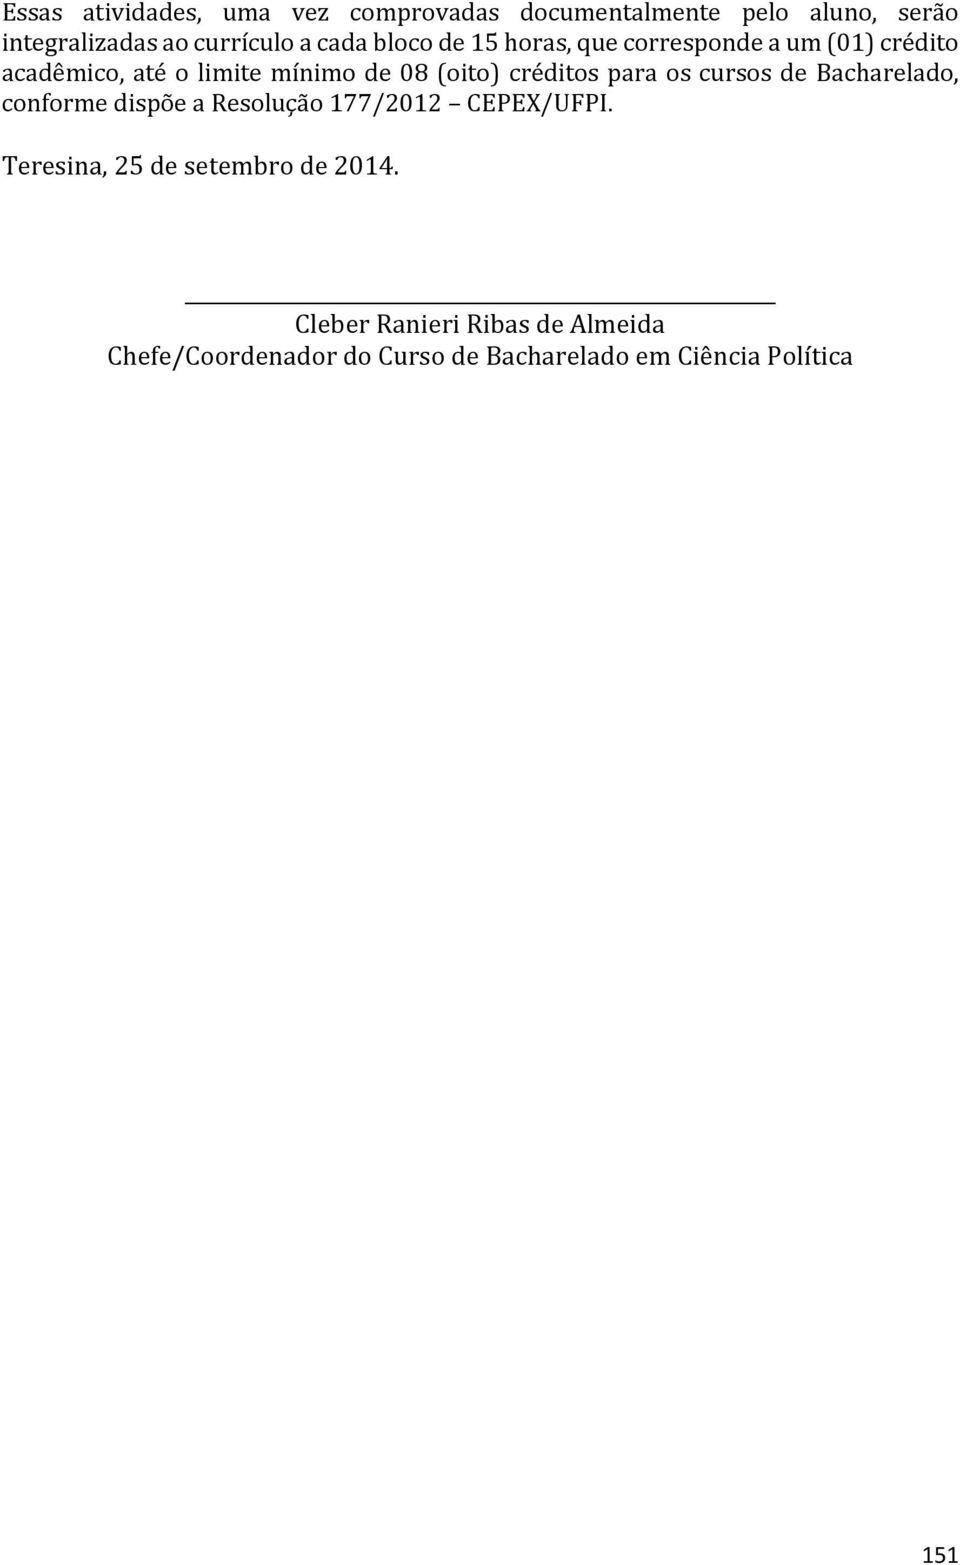 créditos para os cursos de Bacharelado, conforme dispõe a Resolução 177/2012 CEPEX/UFPI.